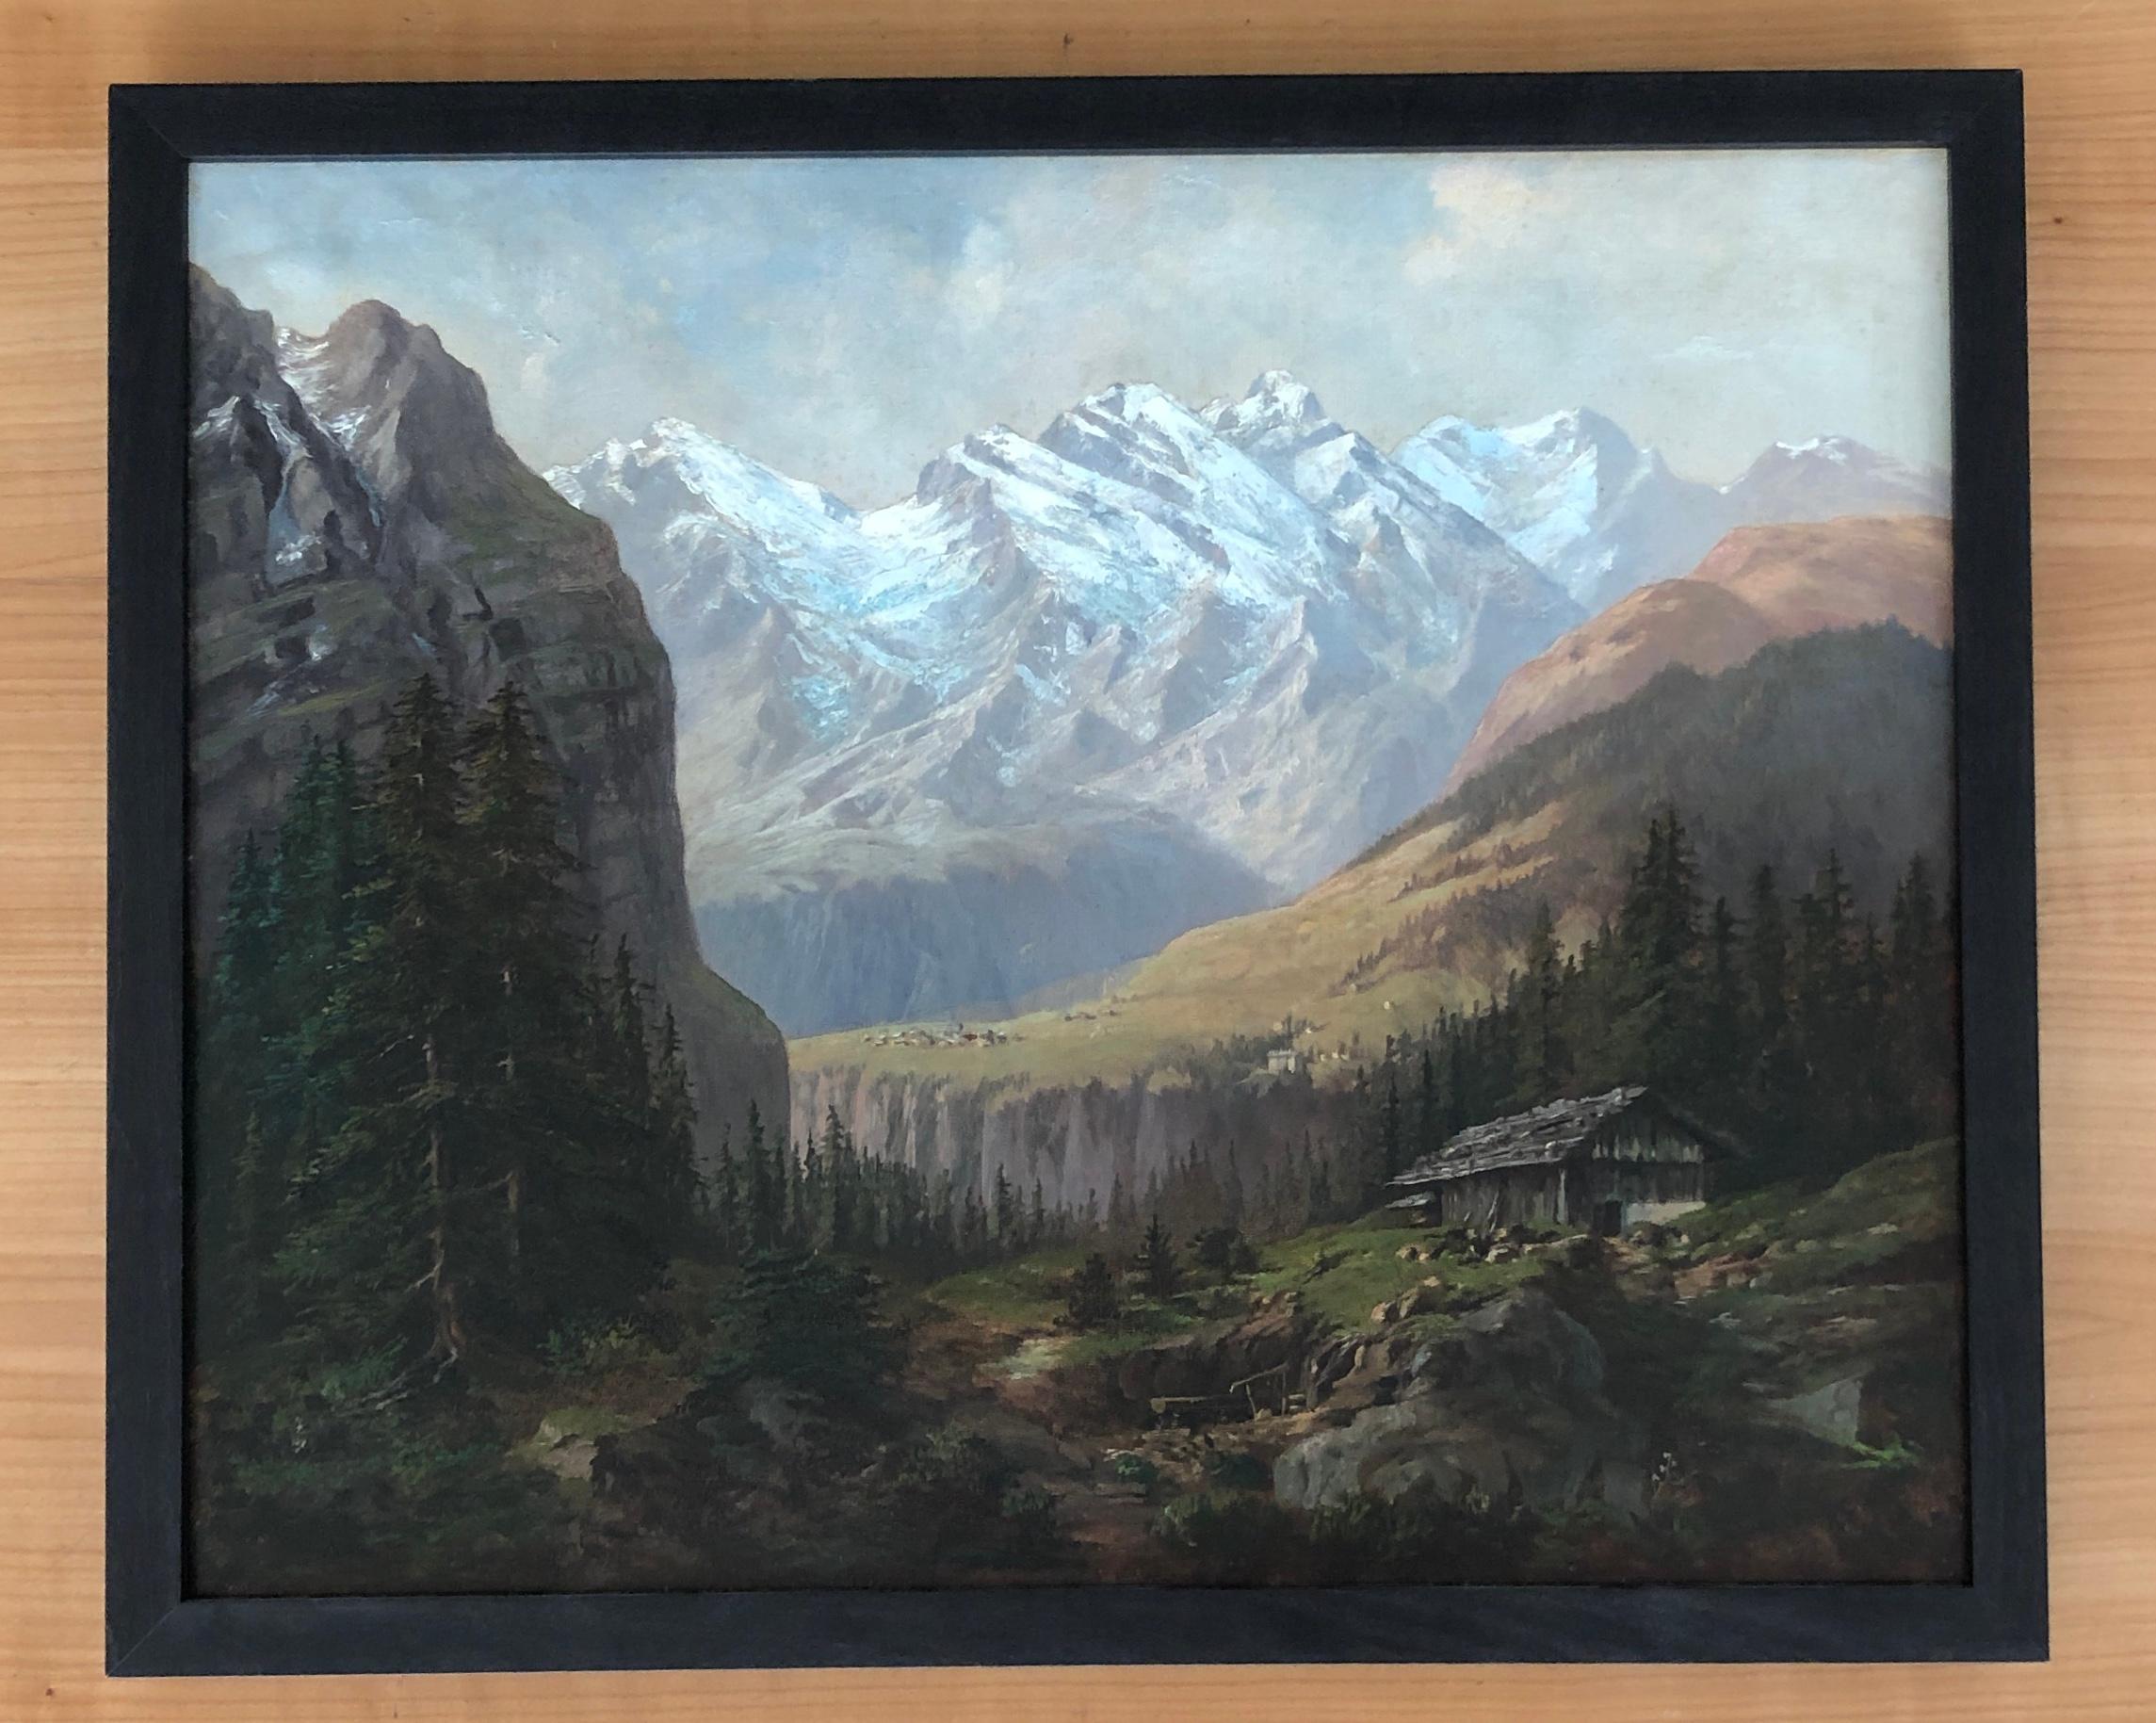 Engslen-Alp mit Wengernalp, German Switzerland - Painting by Unknown